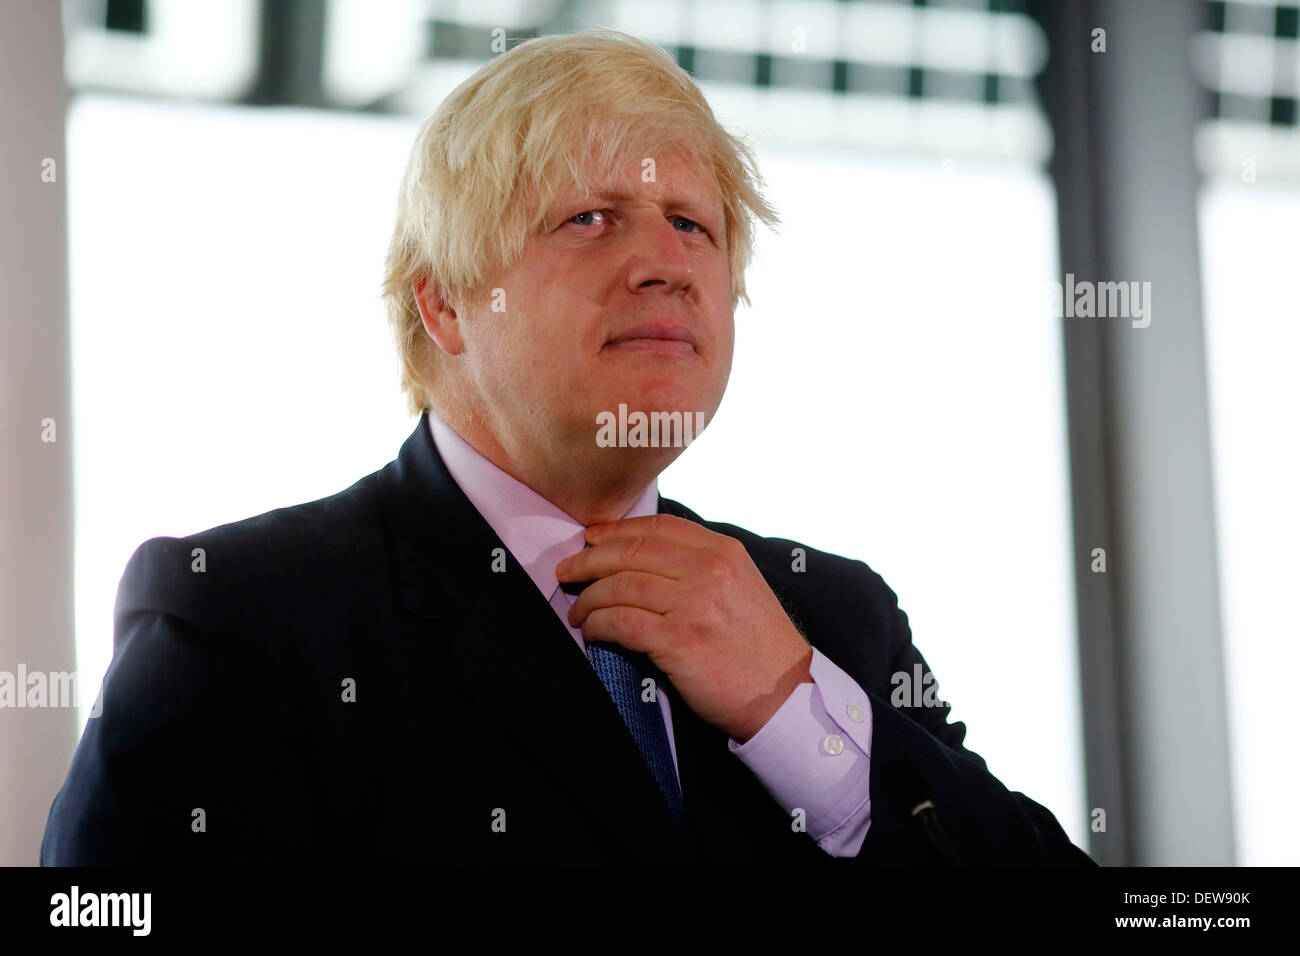 Le maire de Londres Boris Johnson, le 24 septembre 2013 Banque D'Images